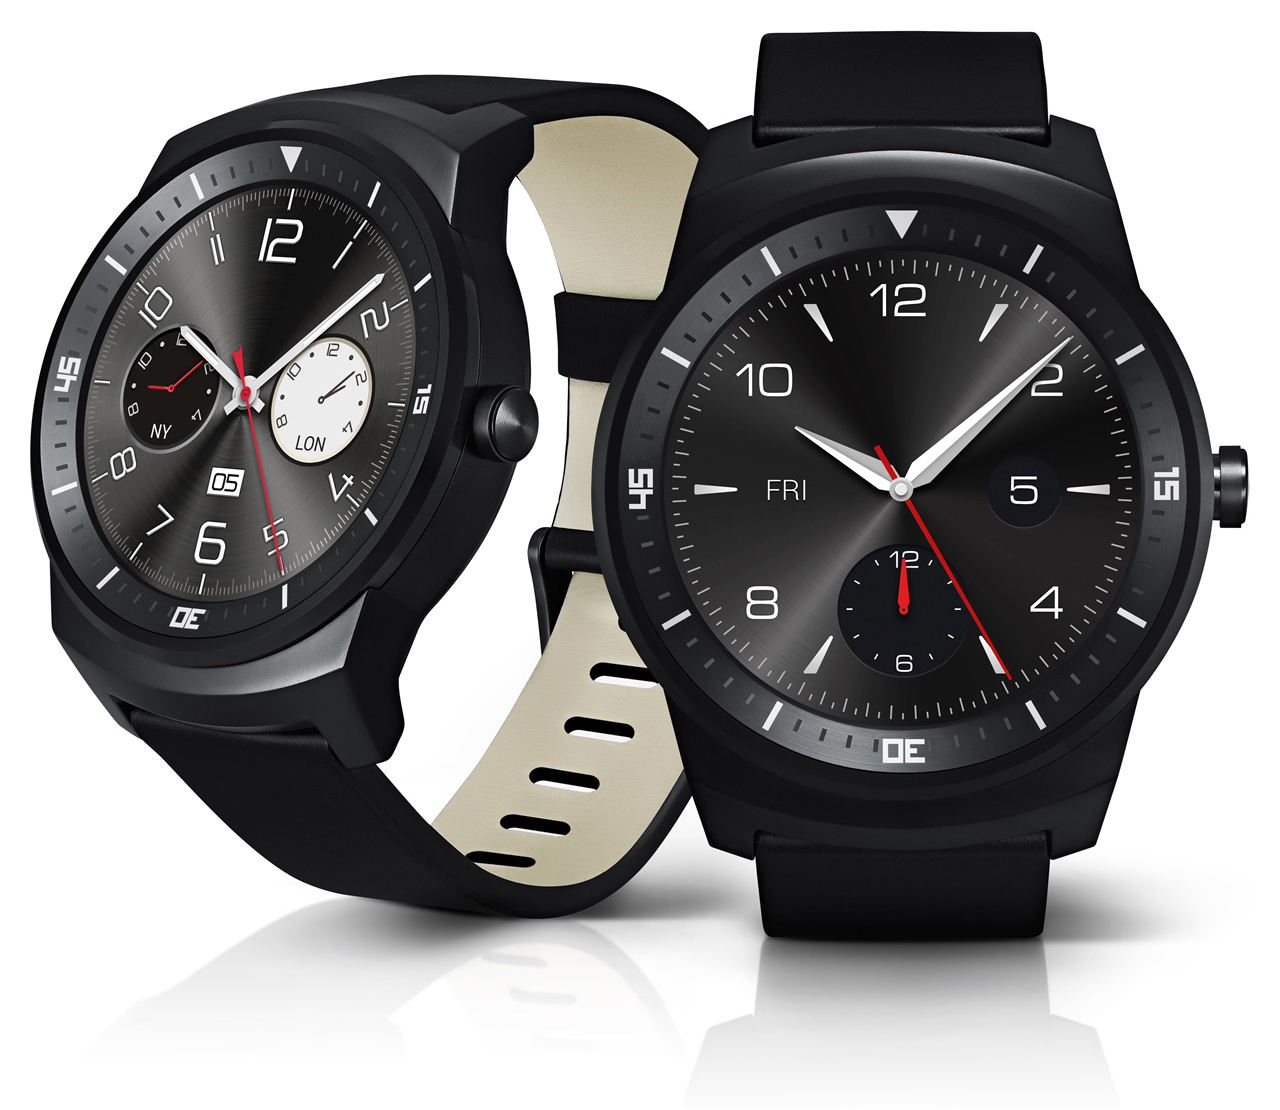 La prochaine mise à jour d’Android Wear apportera le WiFi au LG G Watch R